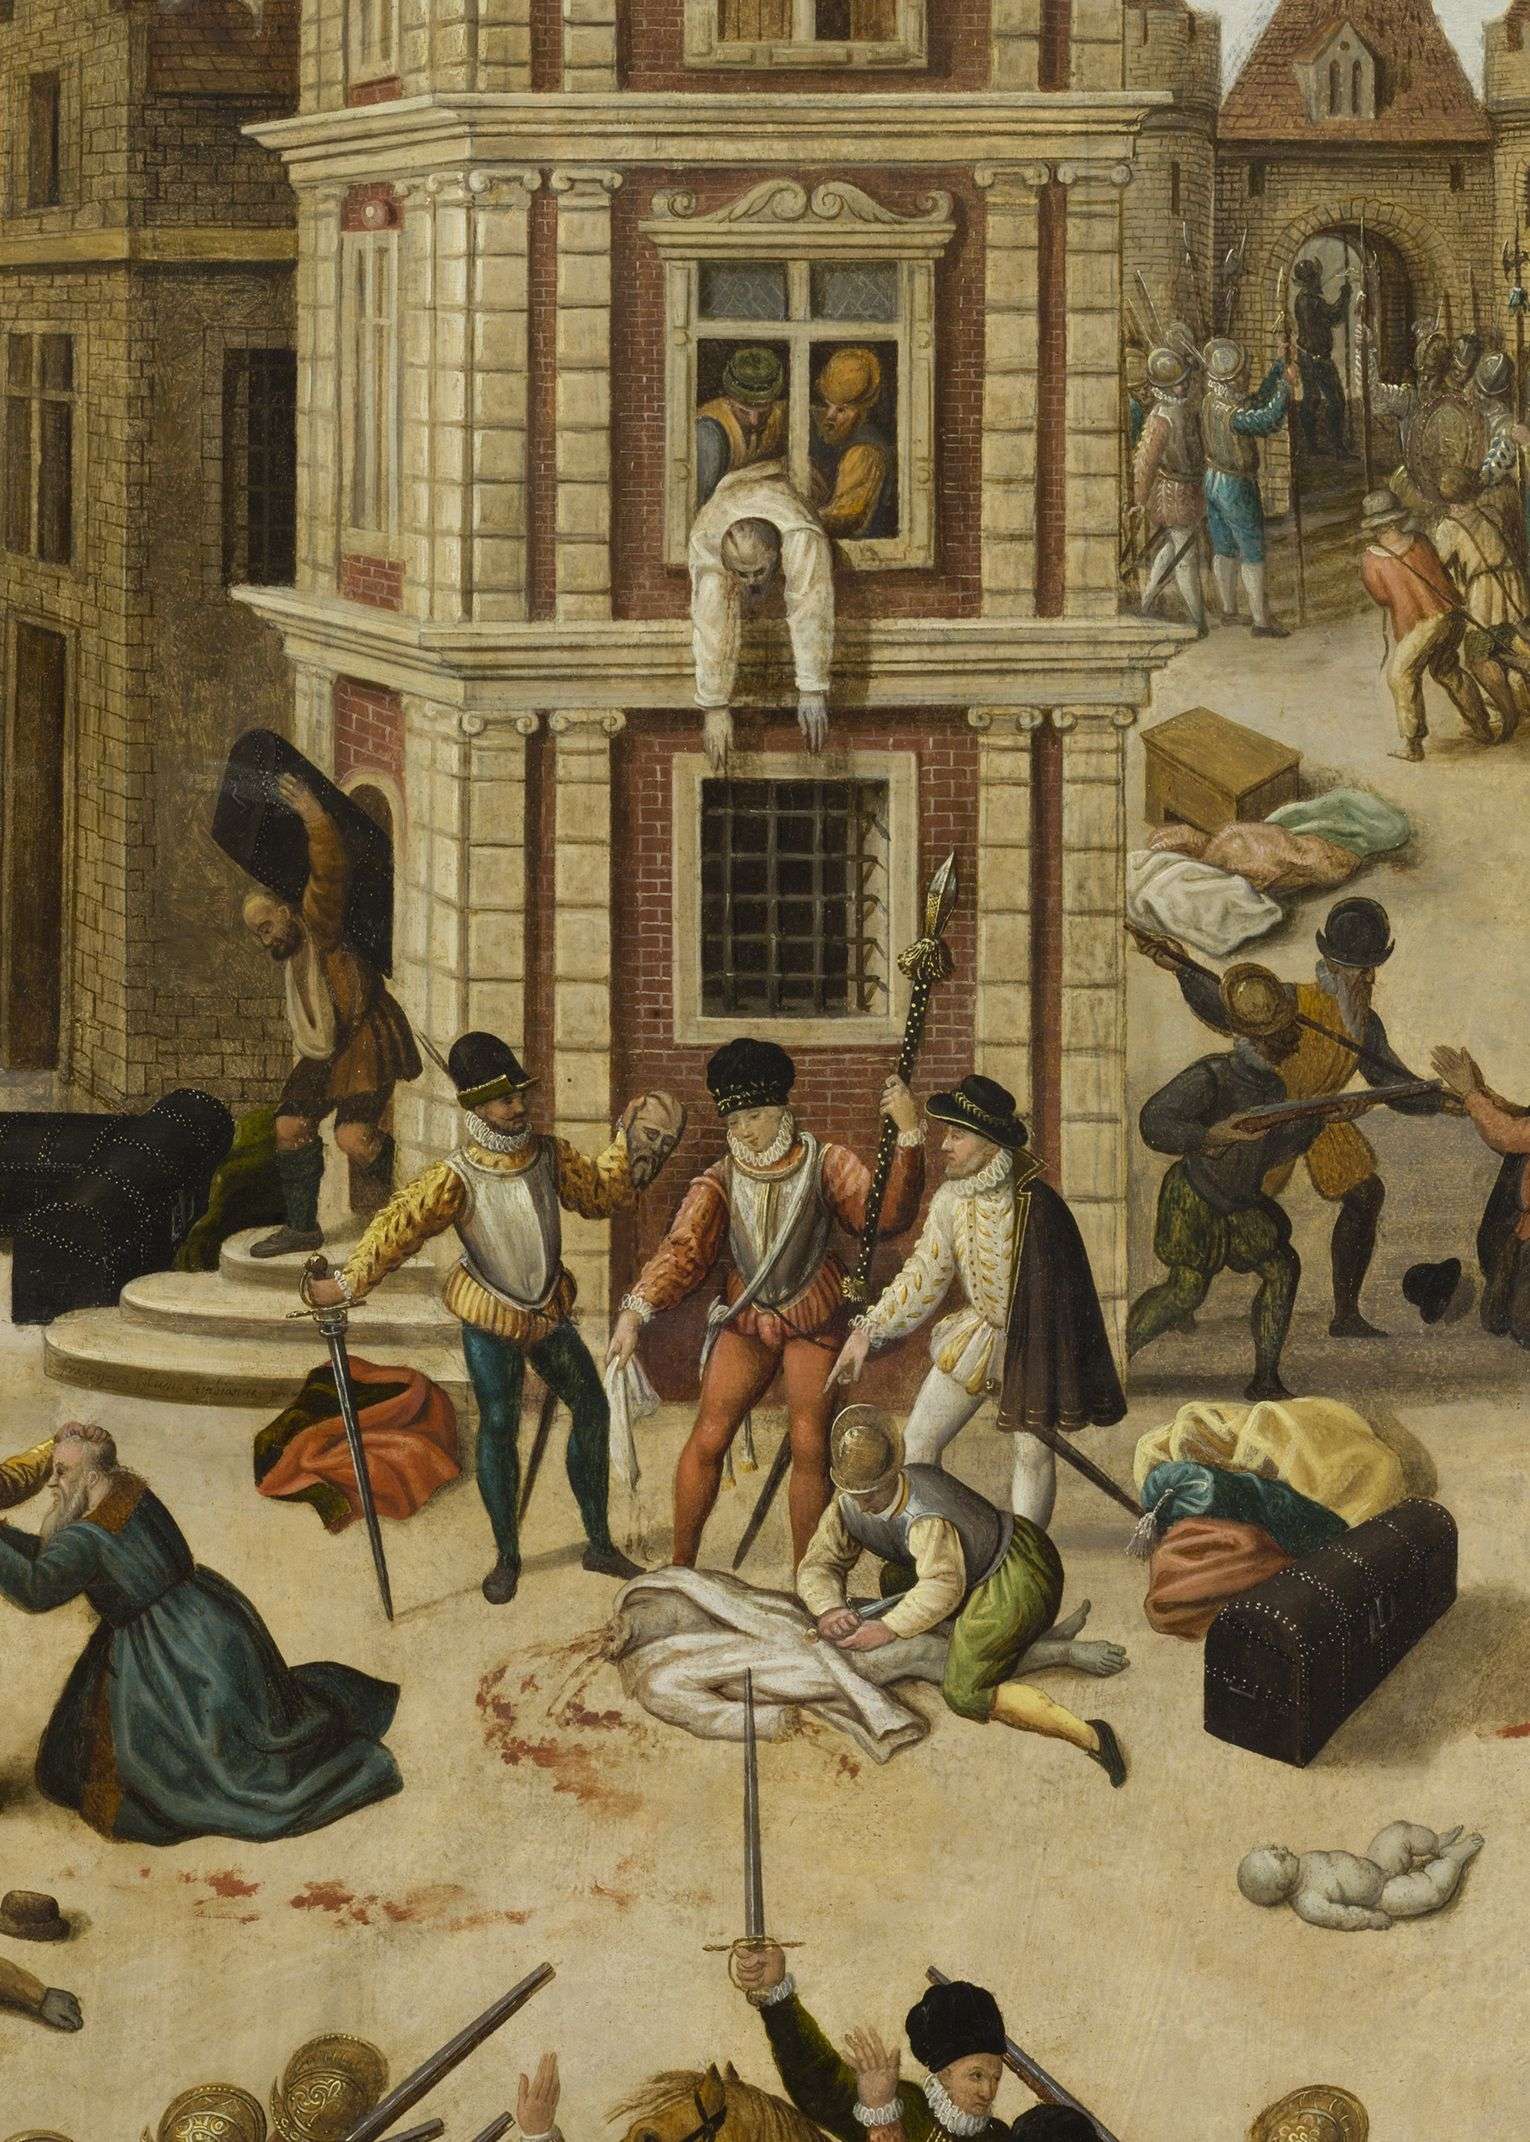 François Dubois (Amiens, 1529 - Genève, 1584),
"Le Massacre de la Saint-Barthélemy" (détail), vers 1572-1584.
Huile sur bois conservée au musée cantonal des Beaux-Arts de Lausanne.